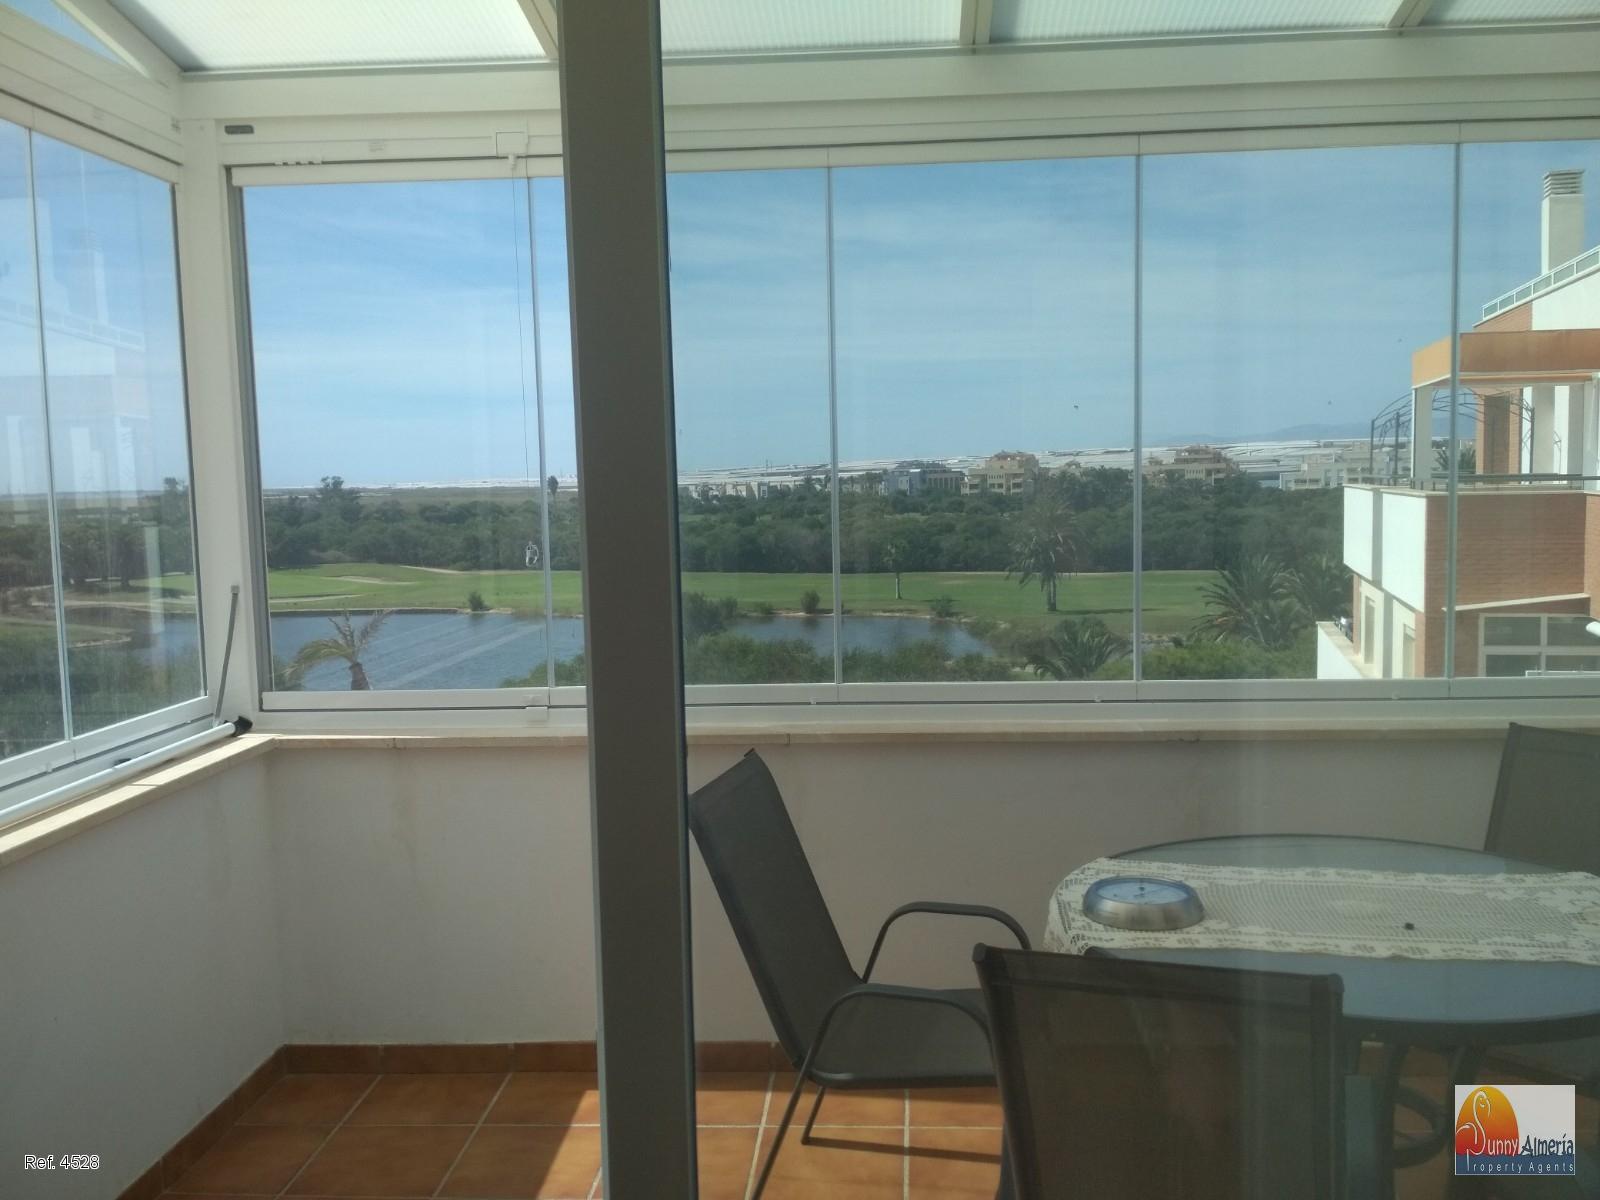 Luxury Apartment for rent in Carretera Ciudad de Cadiz 0 (Roquetas de Mar), 750 €/month